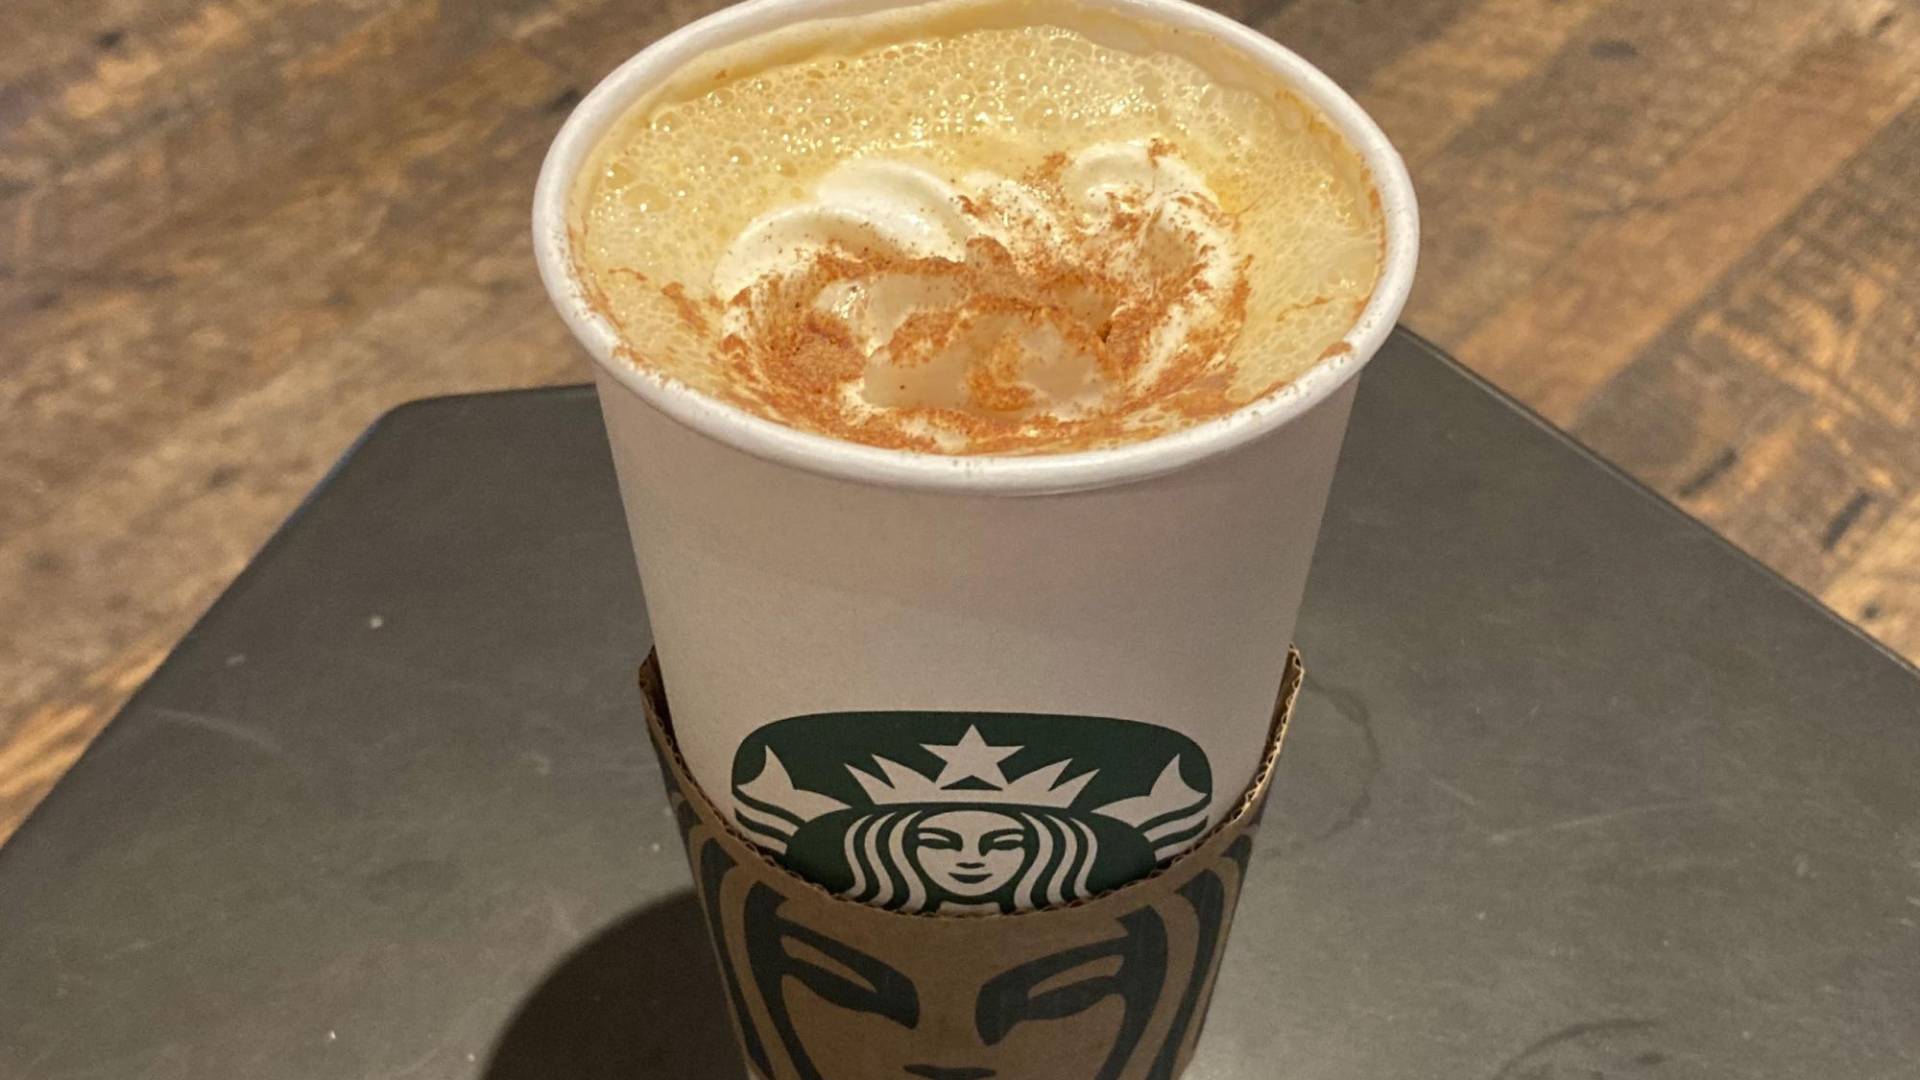 $!Para los estadounidenses, la bebida con sabor a pay de Starbucks ofrece un dulce recordatorio del invierno.